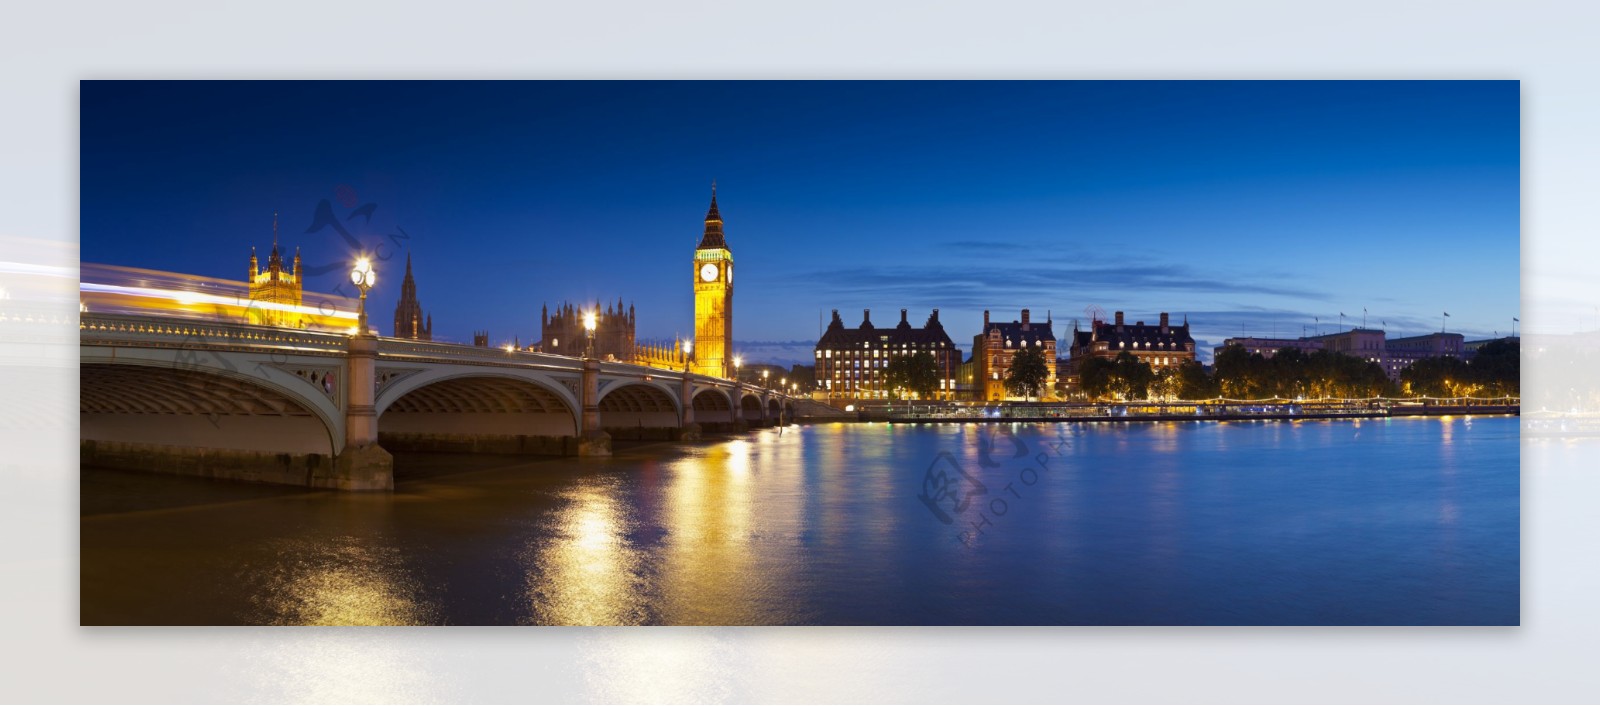 伦敦威斯敏斯特大桥夜景高清图片